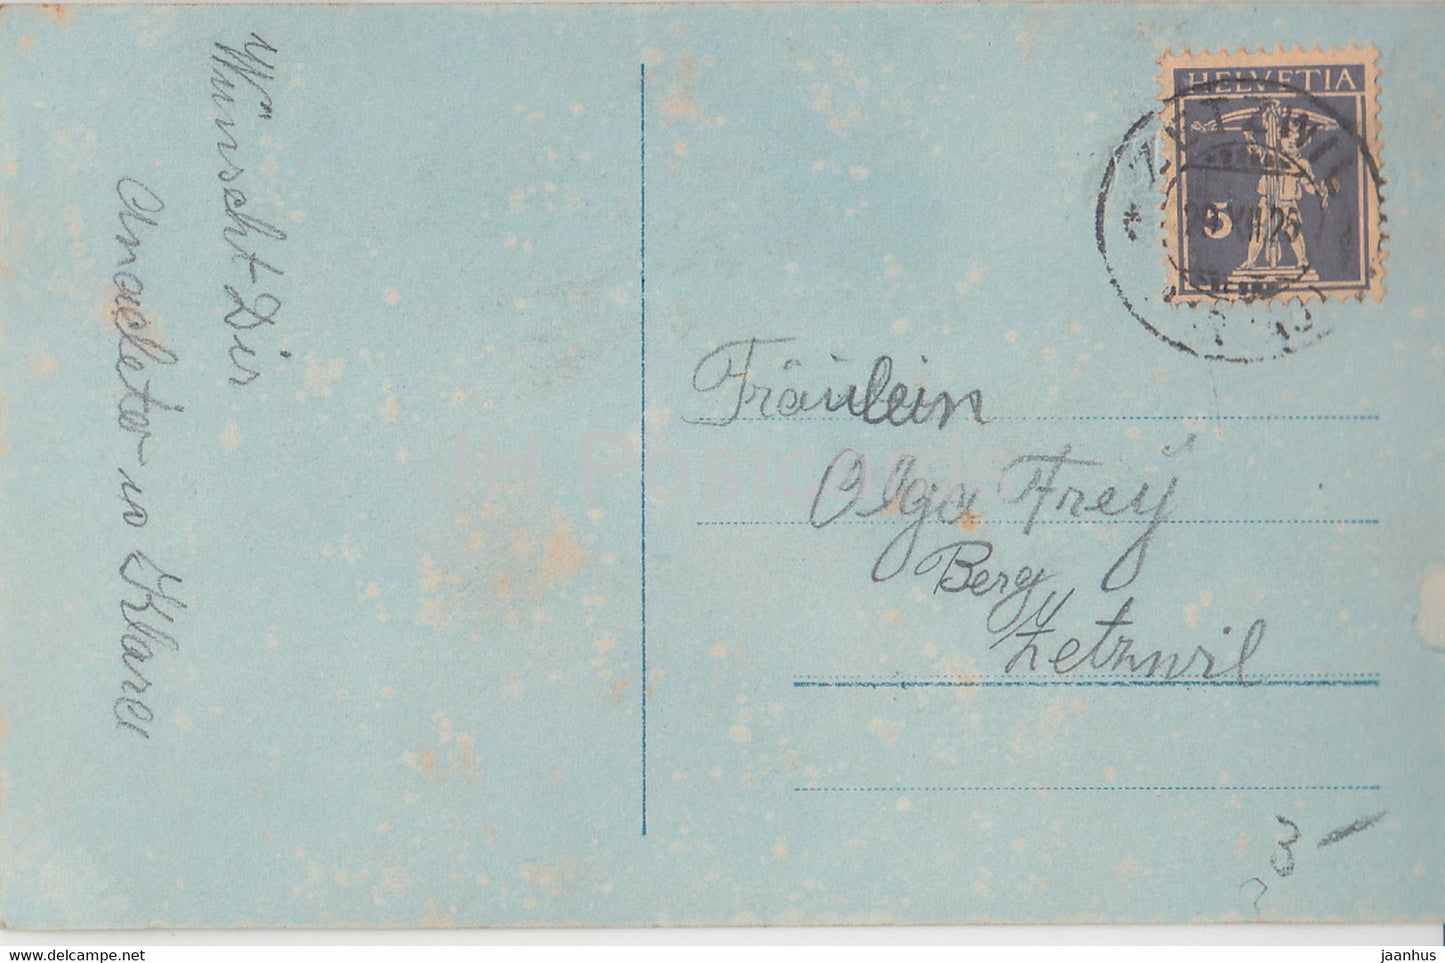 Neujahrsgrußkarte – Ein glückliches Neues Jahr – Mädchen – NPG – 7868/1 – alte Postkarte – 1925 – Deutschland – gebraucht